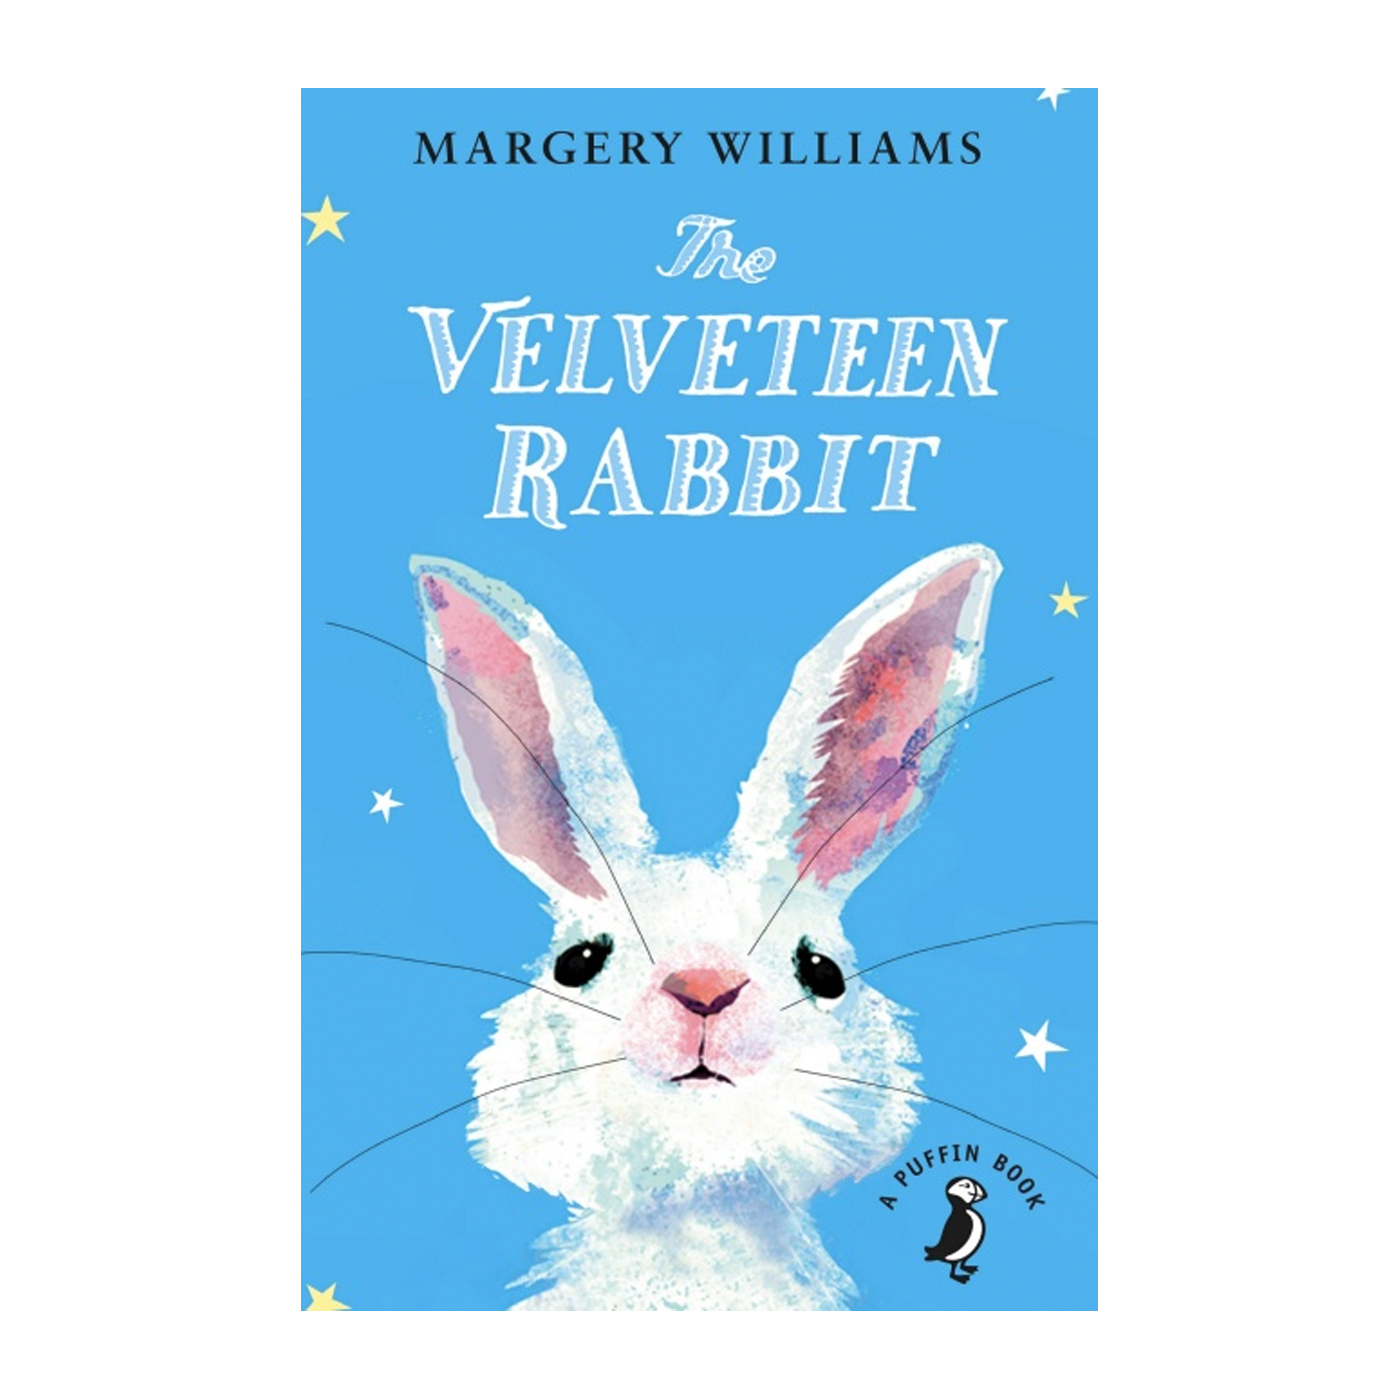  The Velveteen Rabbit